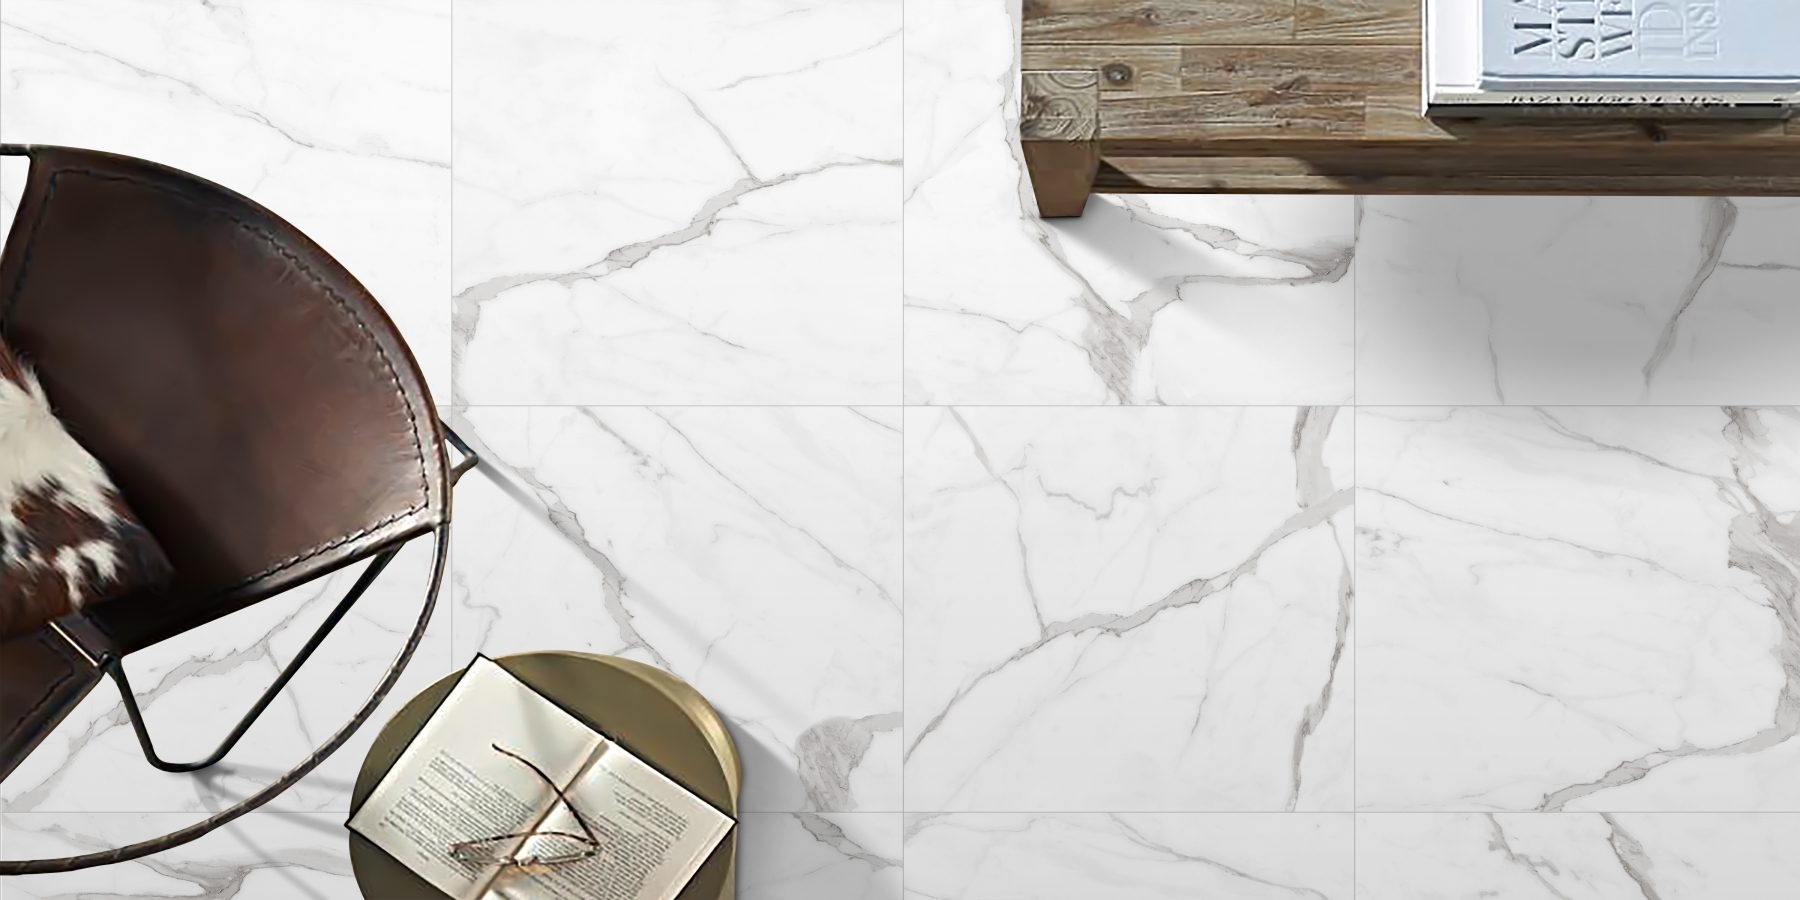 Mẫu gạch 80x80 vân đá marble màu trắng sáng bóng được nhiều gia đình chọn lựa chọn khi thiết kế